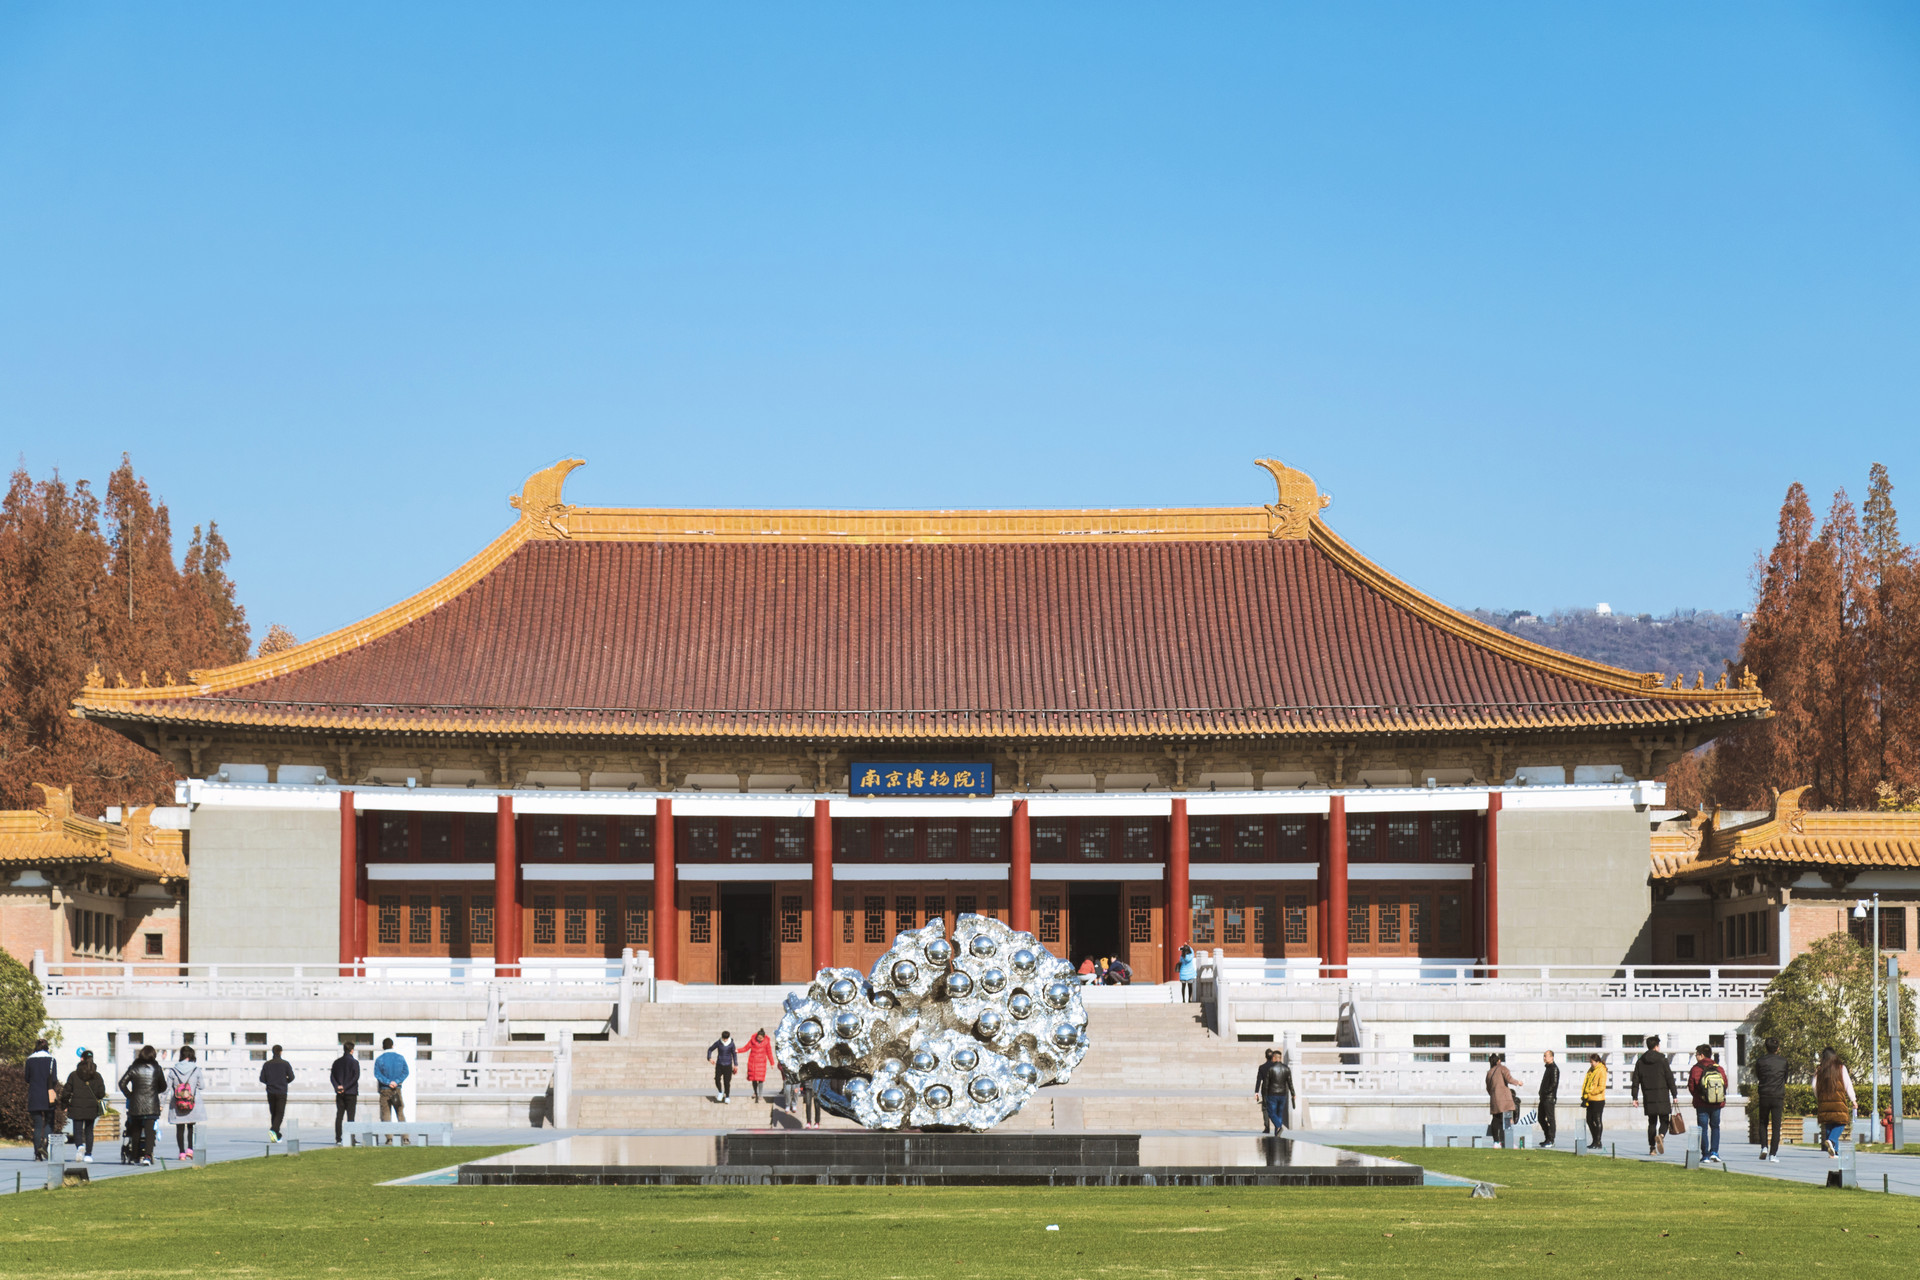 迎面映入眼帘的就是一栋仿辽代的古建筑,也是南京博物院的正大门